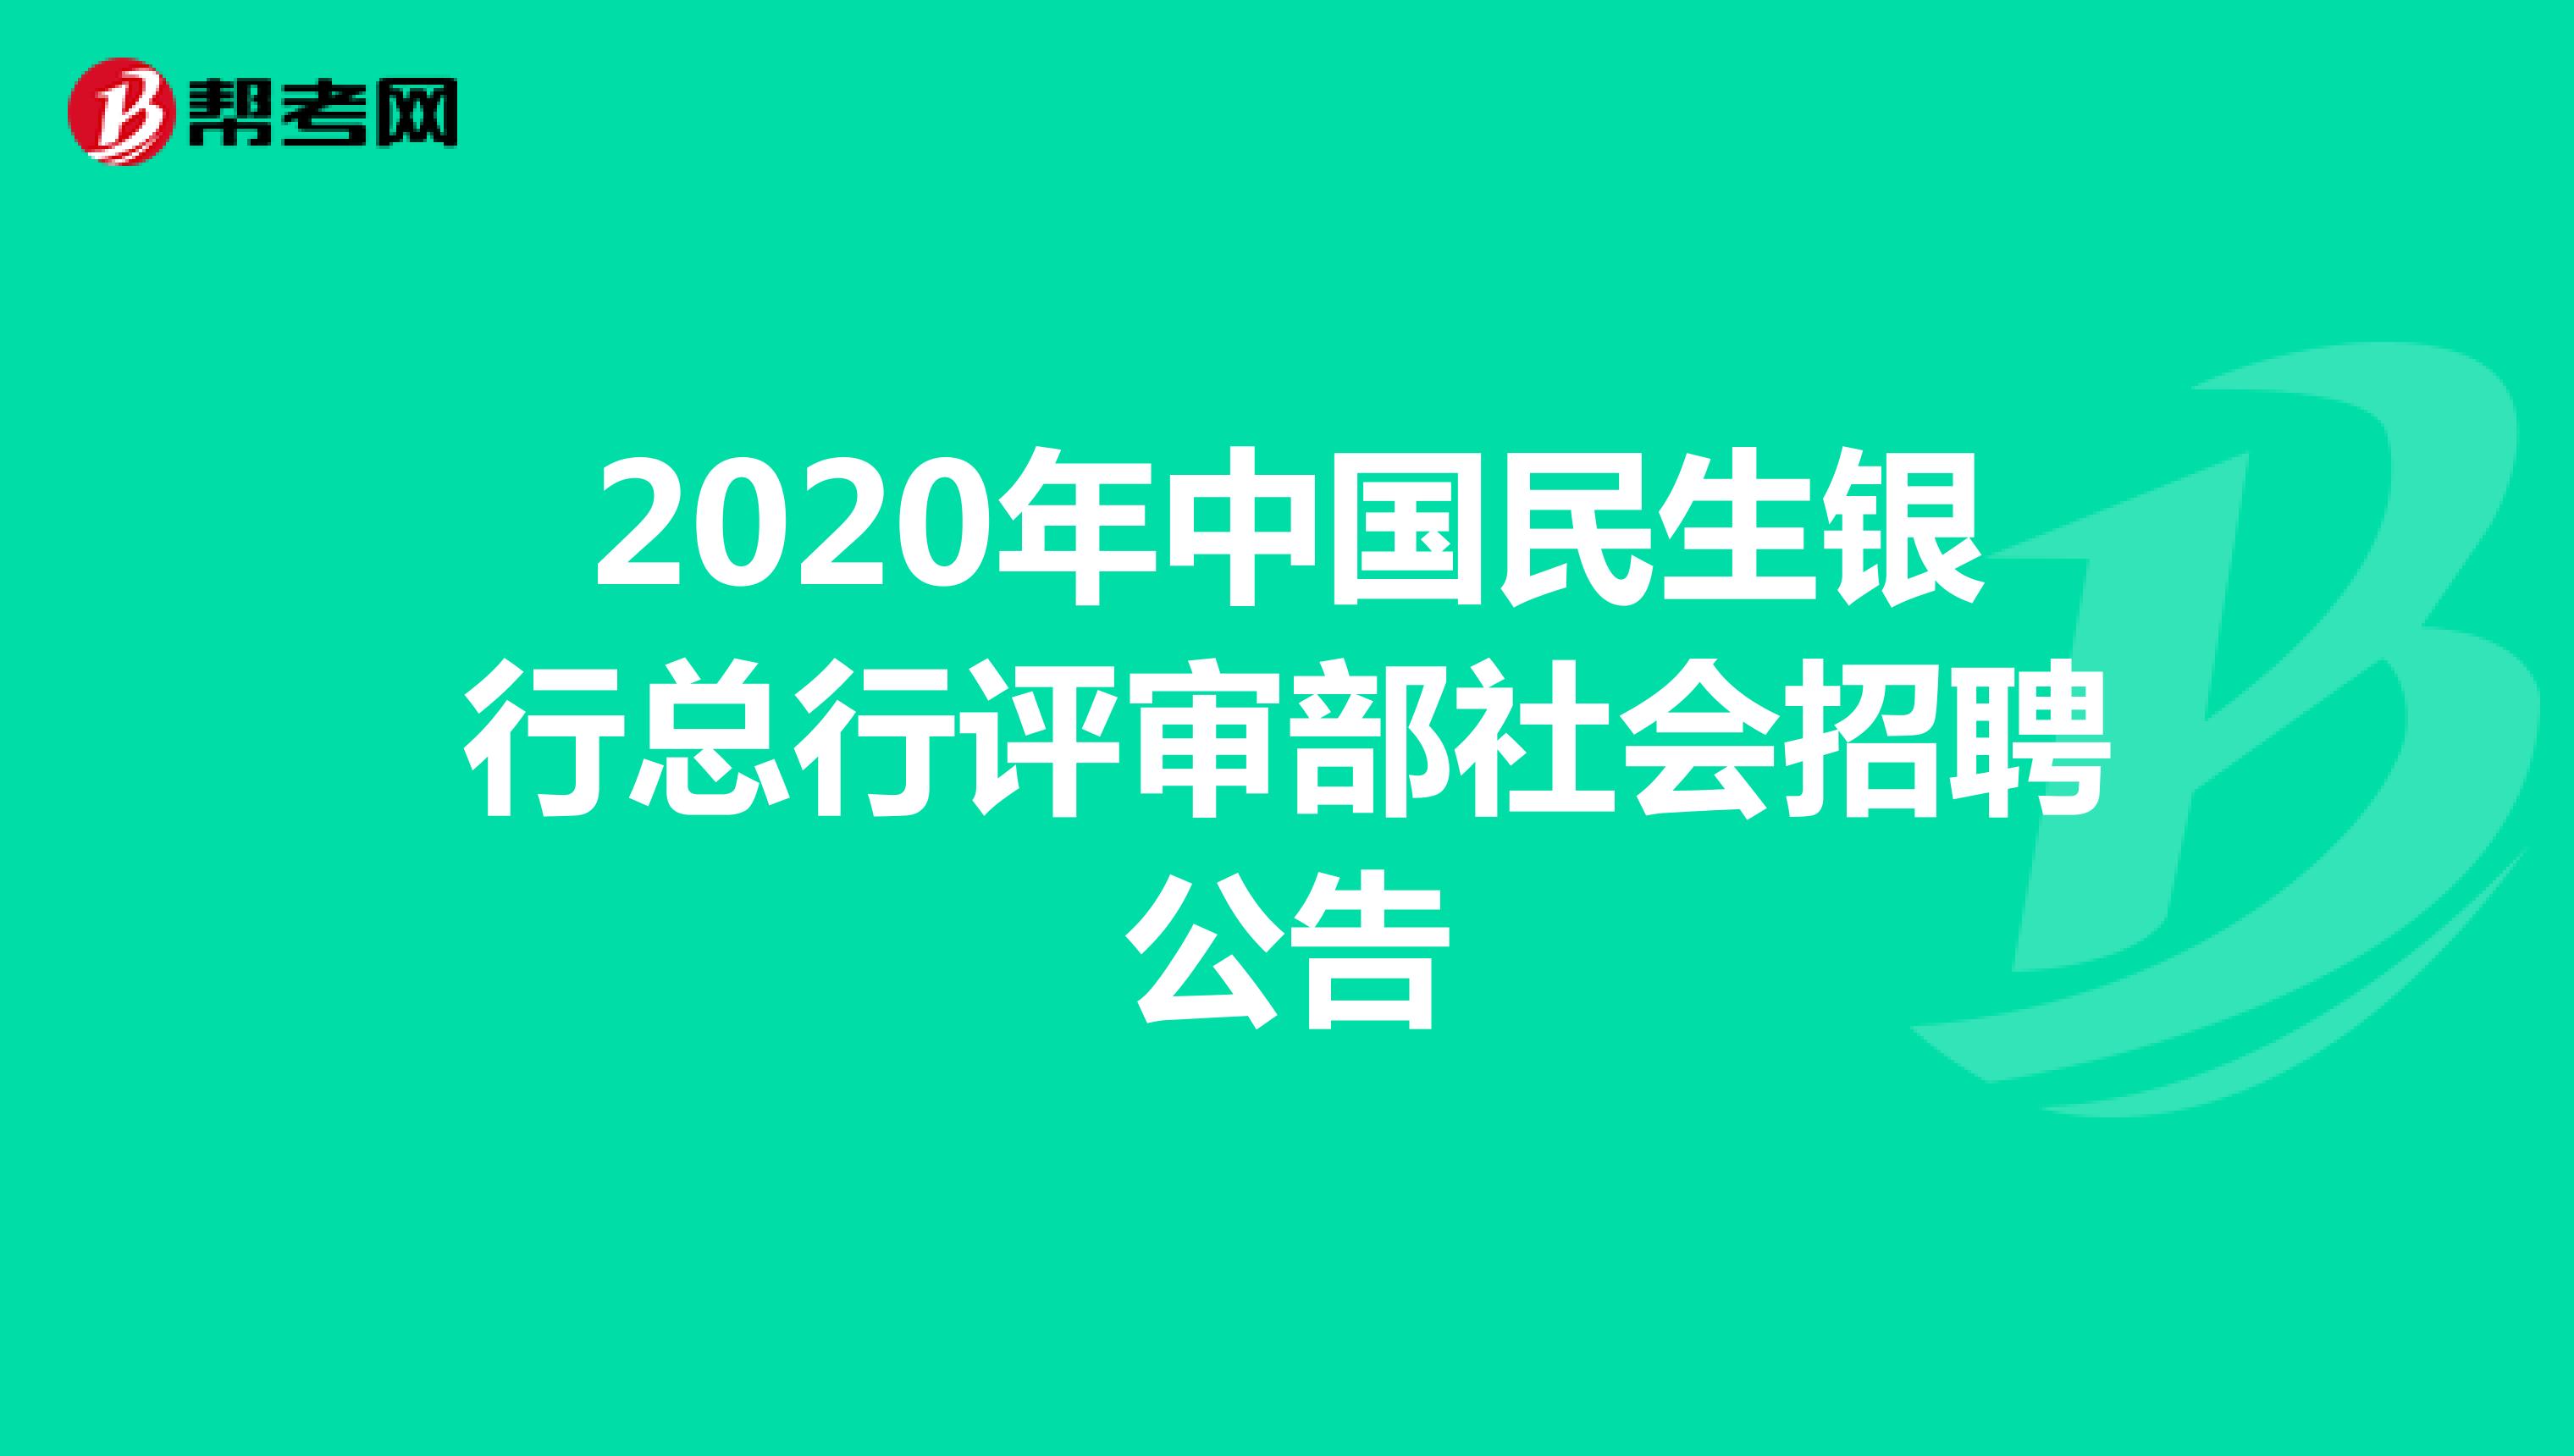 2020年中国民生银行总行评审部社会招聘公告